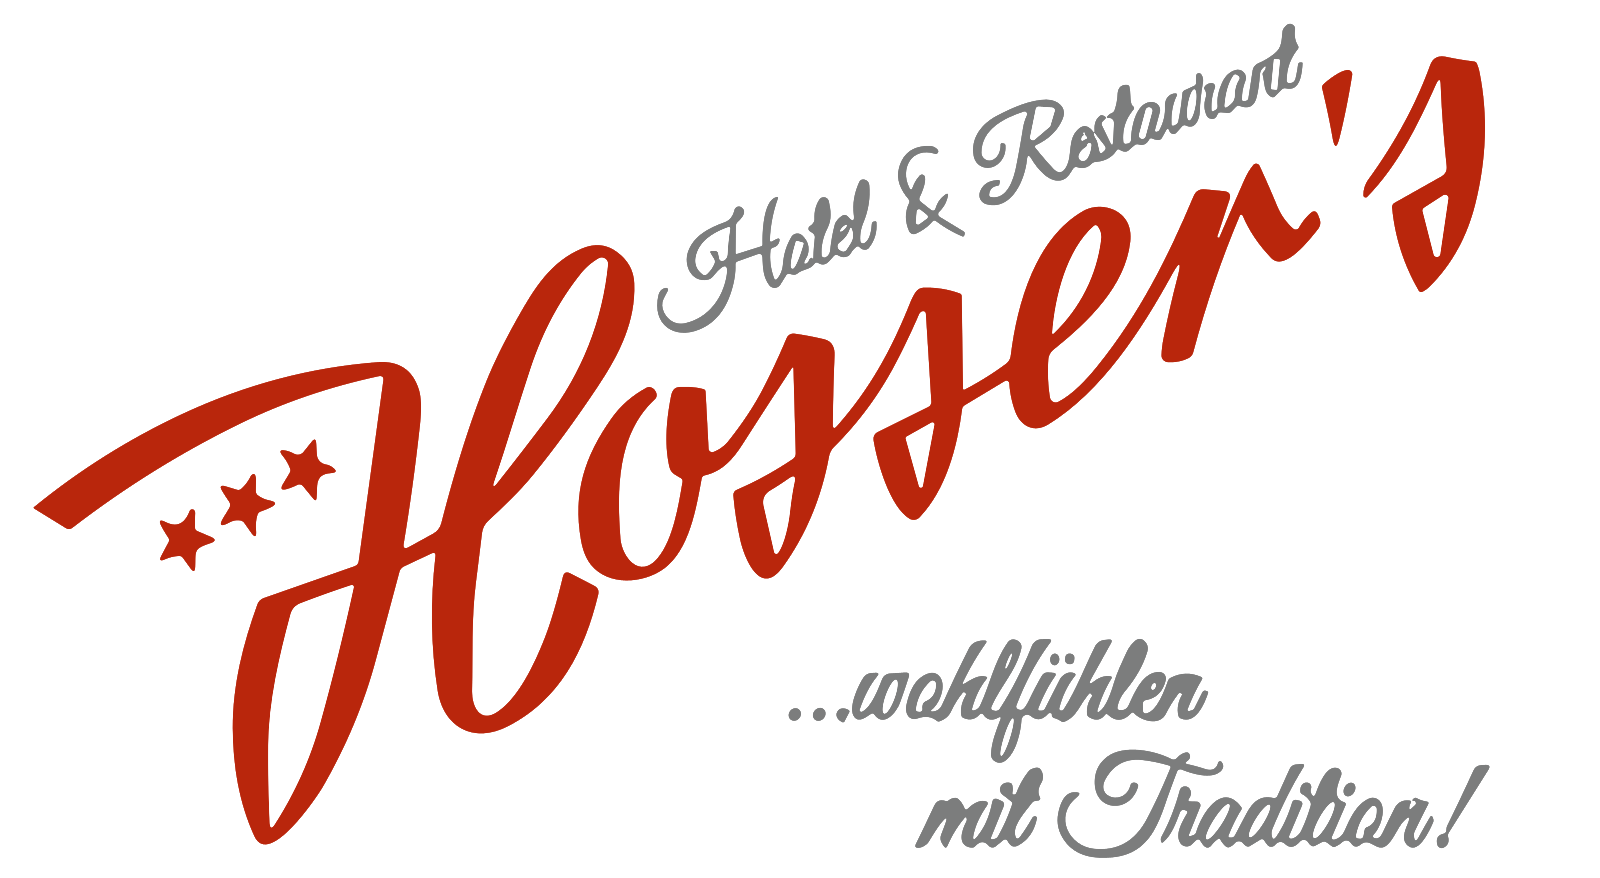 Hosser's Hotel 